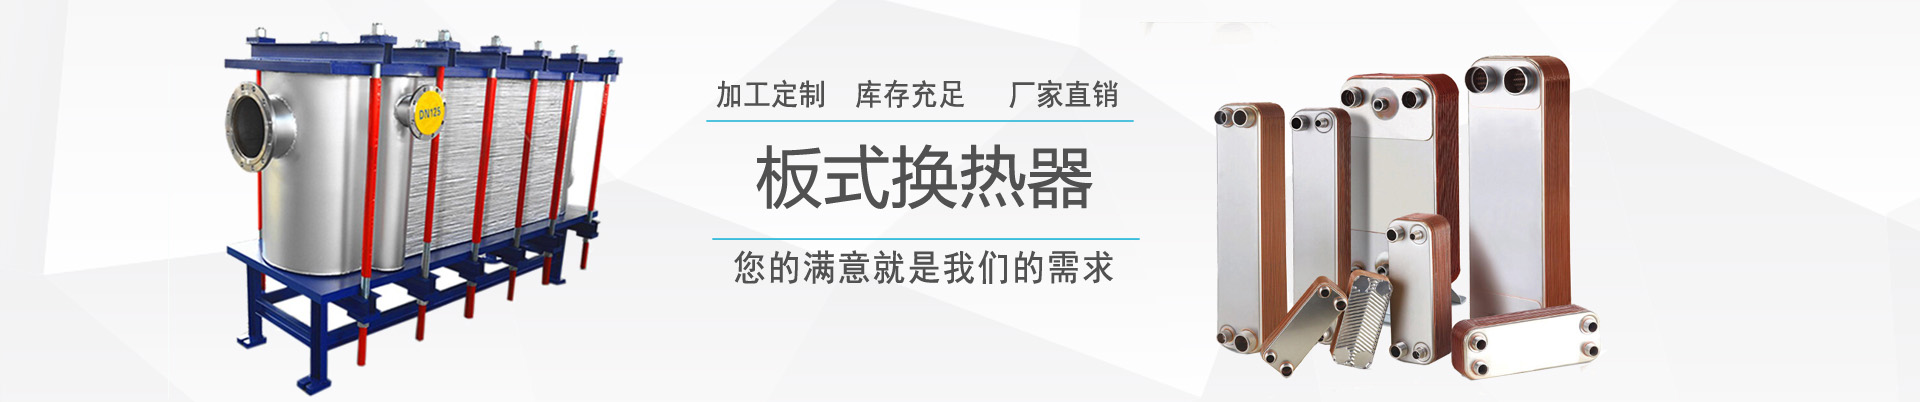 公司新聞 - 新聞中心 - ,換熱器,板式換熱器,換熱器機組,上海將星化工設備有限公司